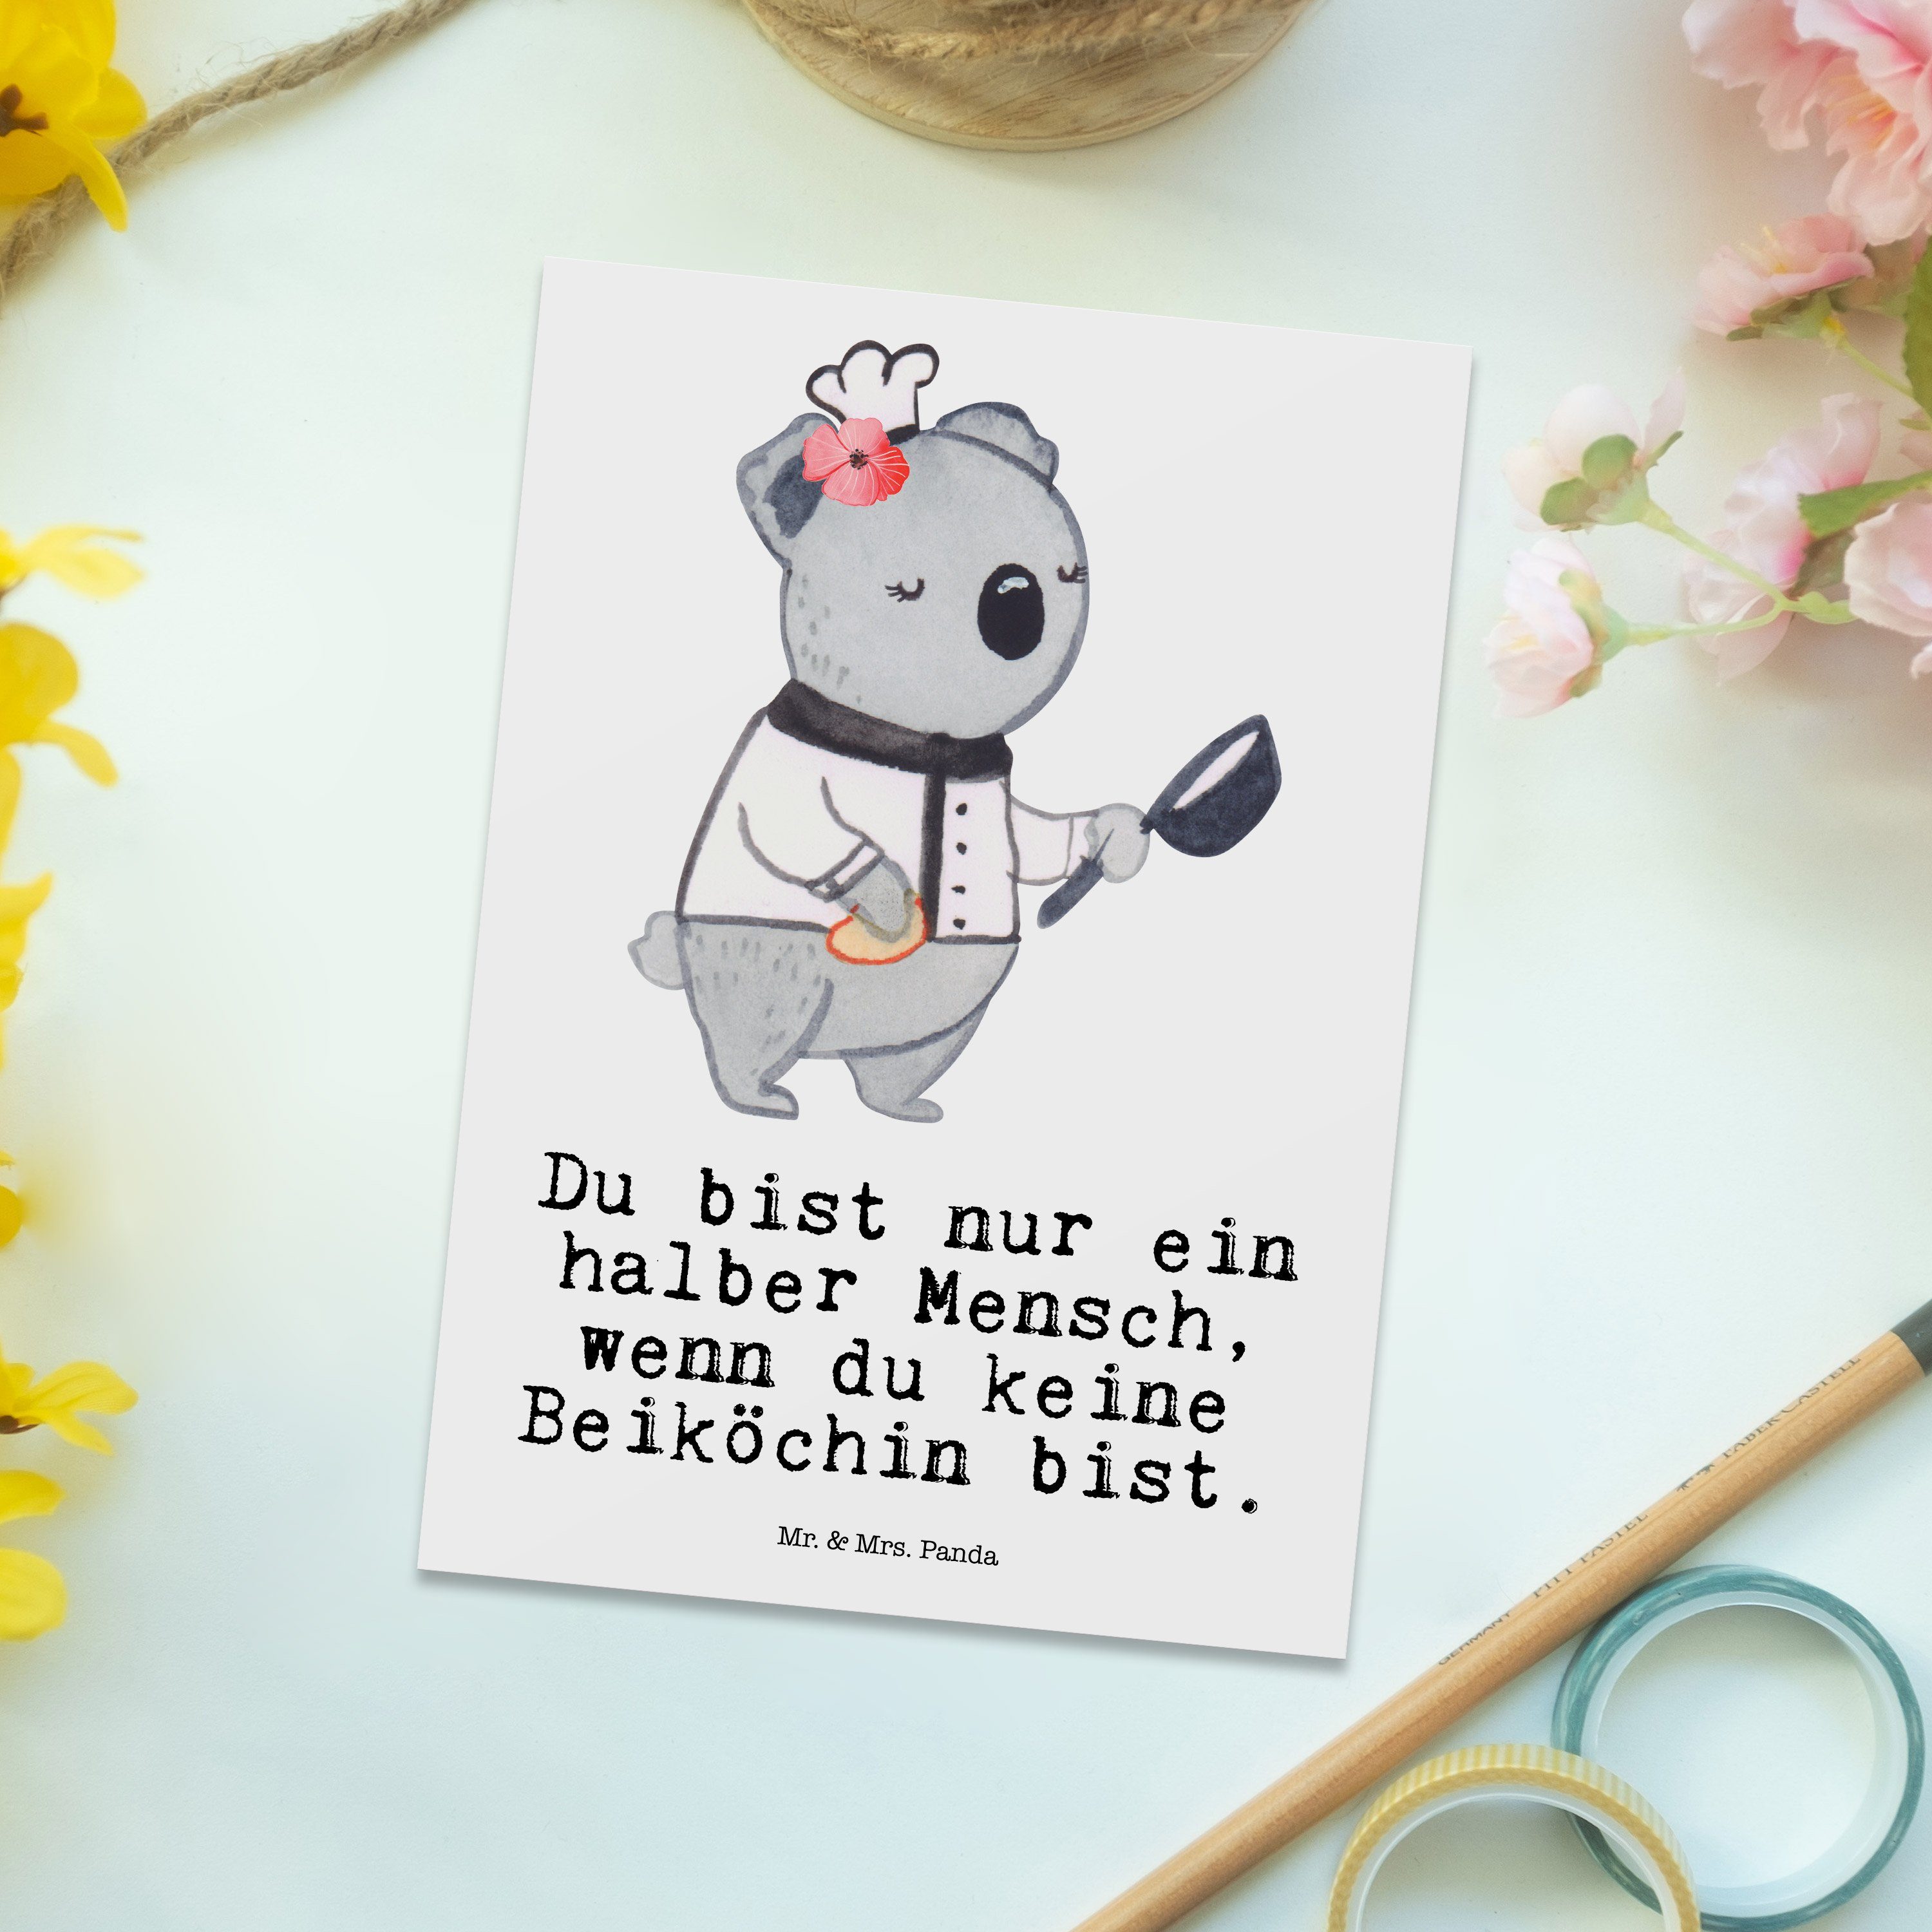 Mr. & Mrs. Panda Postkarte Geschenk, mit Ansichtska Herz - Weiß Kollege, Dankeschön, Beiköchin 